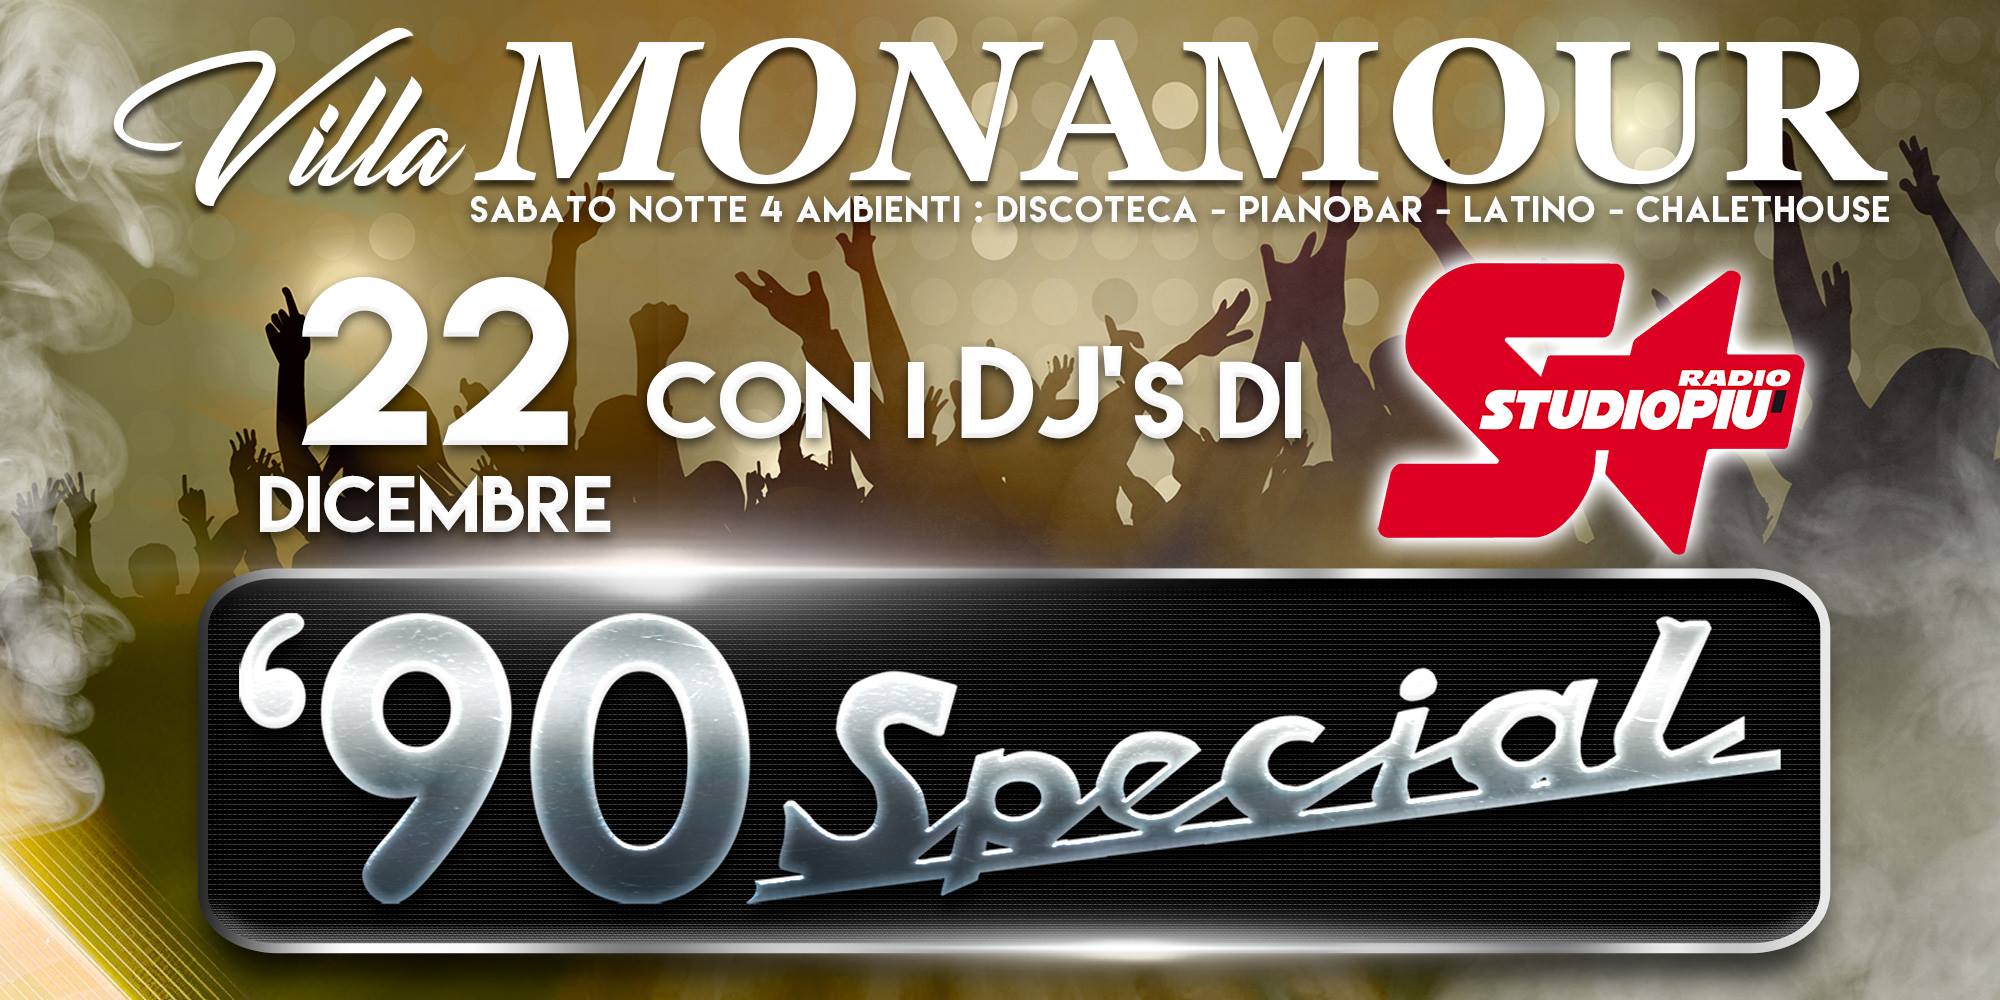 Discoteca Mon Amour Rimini 90 Special Radio studio+